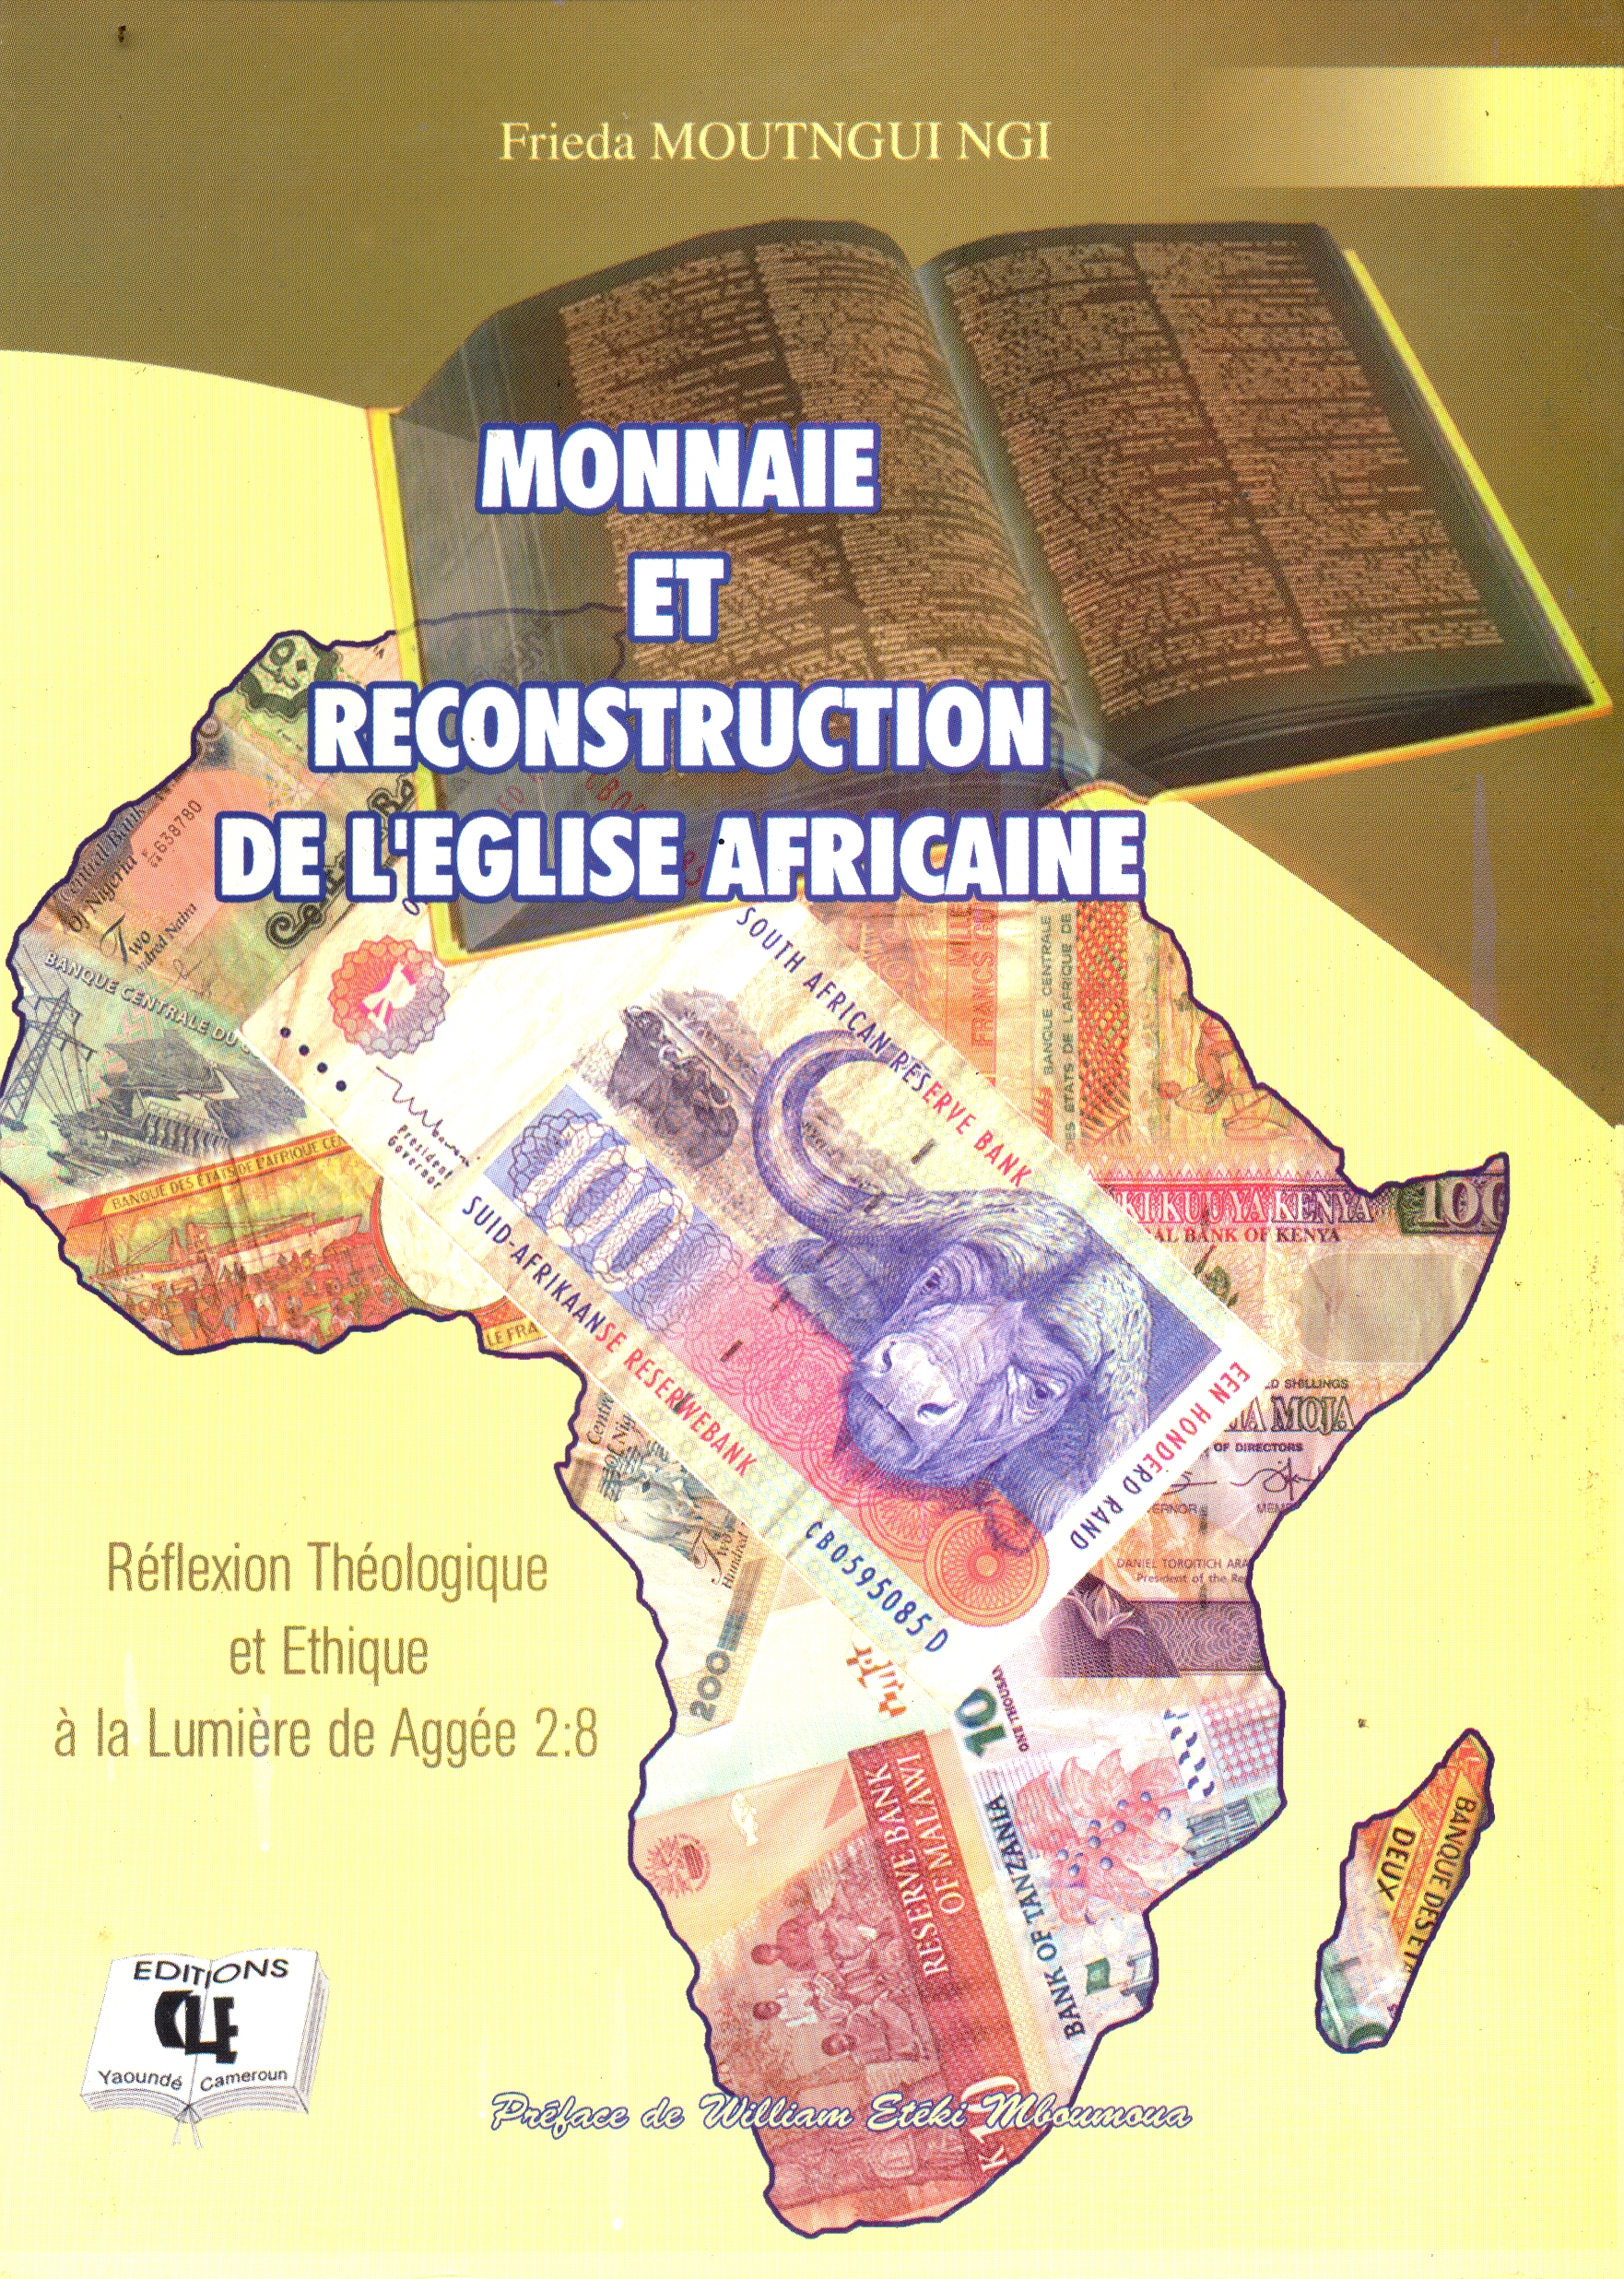 Monnaie et reconstruction de l’église africaine